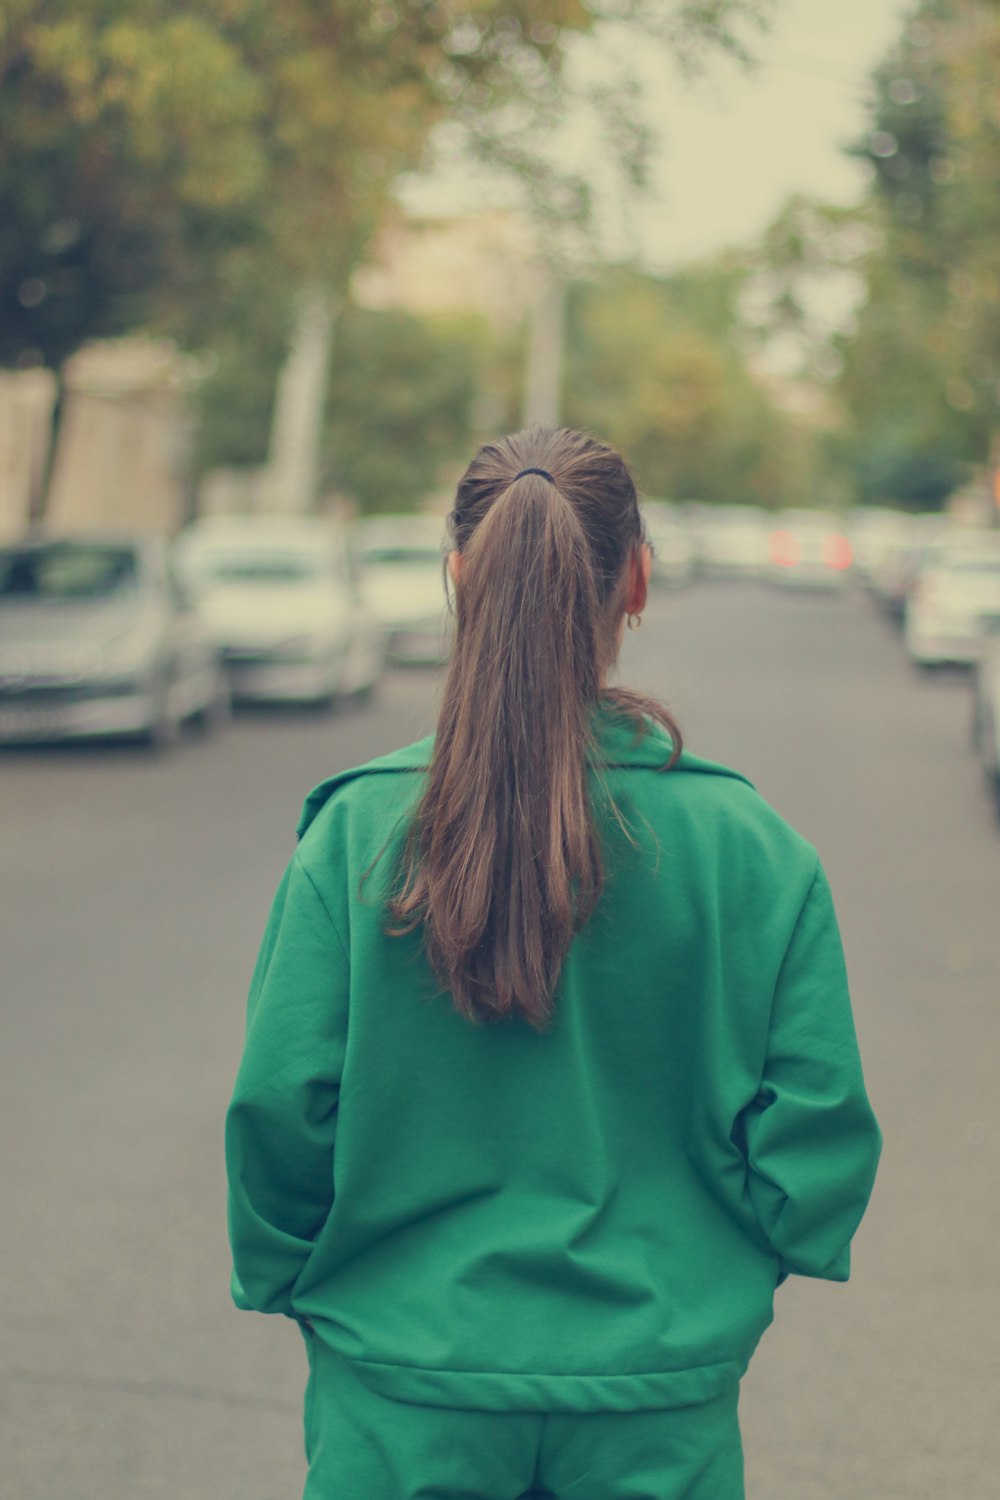 a woman walking down a street in a green jacket